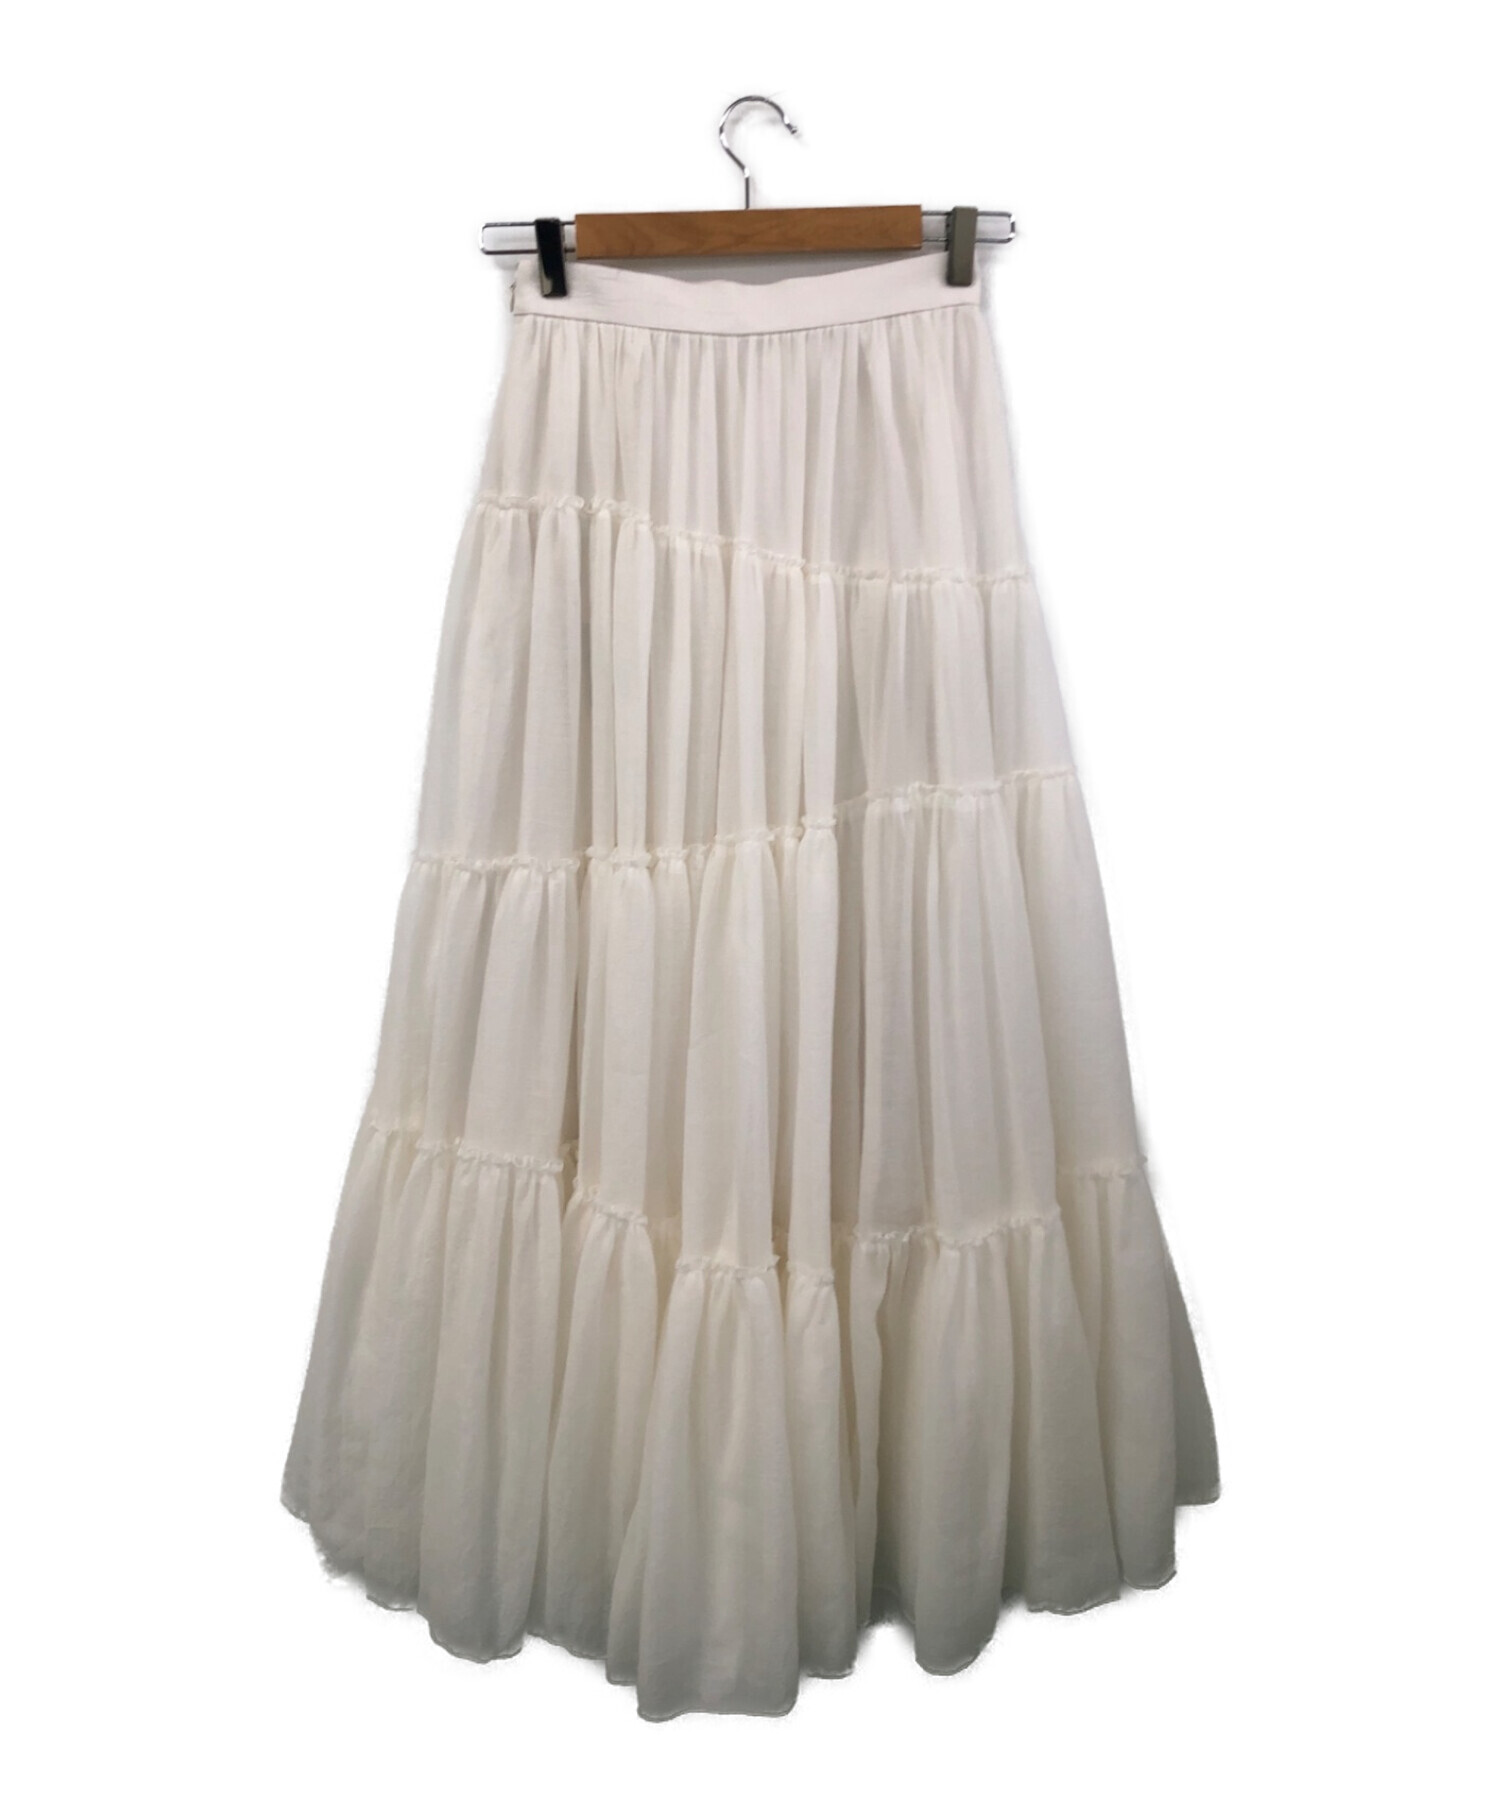 anuans (アニュアンス) ボリュームティアードオーガンジースカート ホワイト サイズ:S